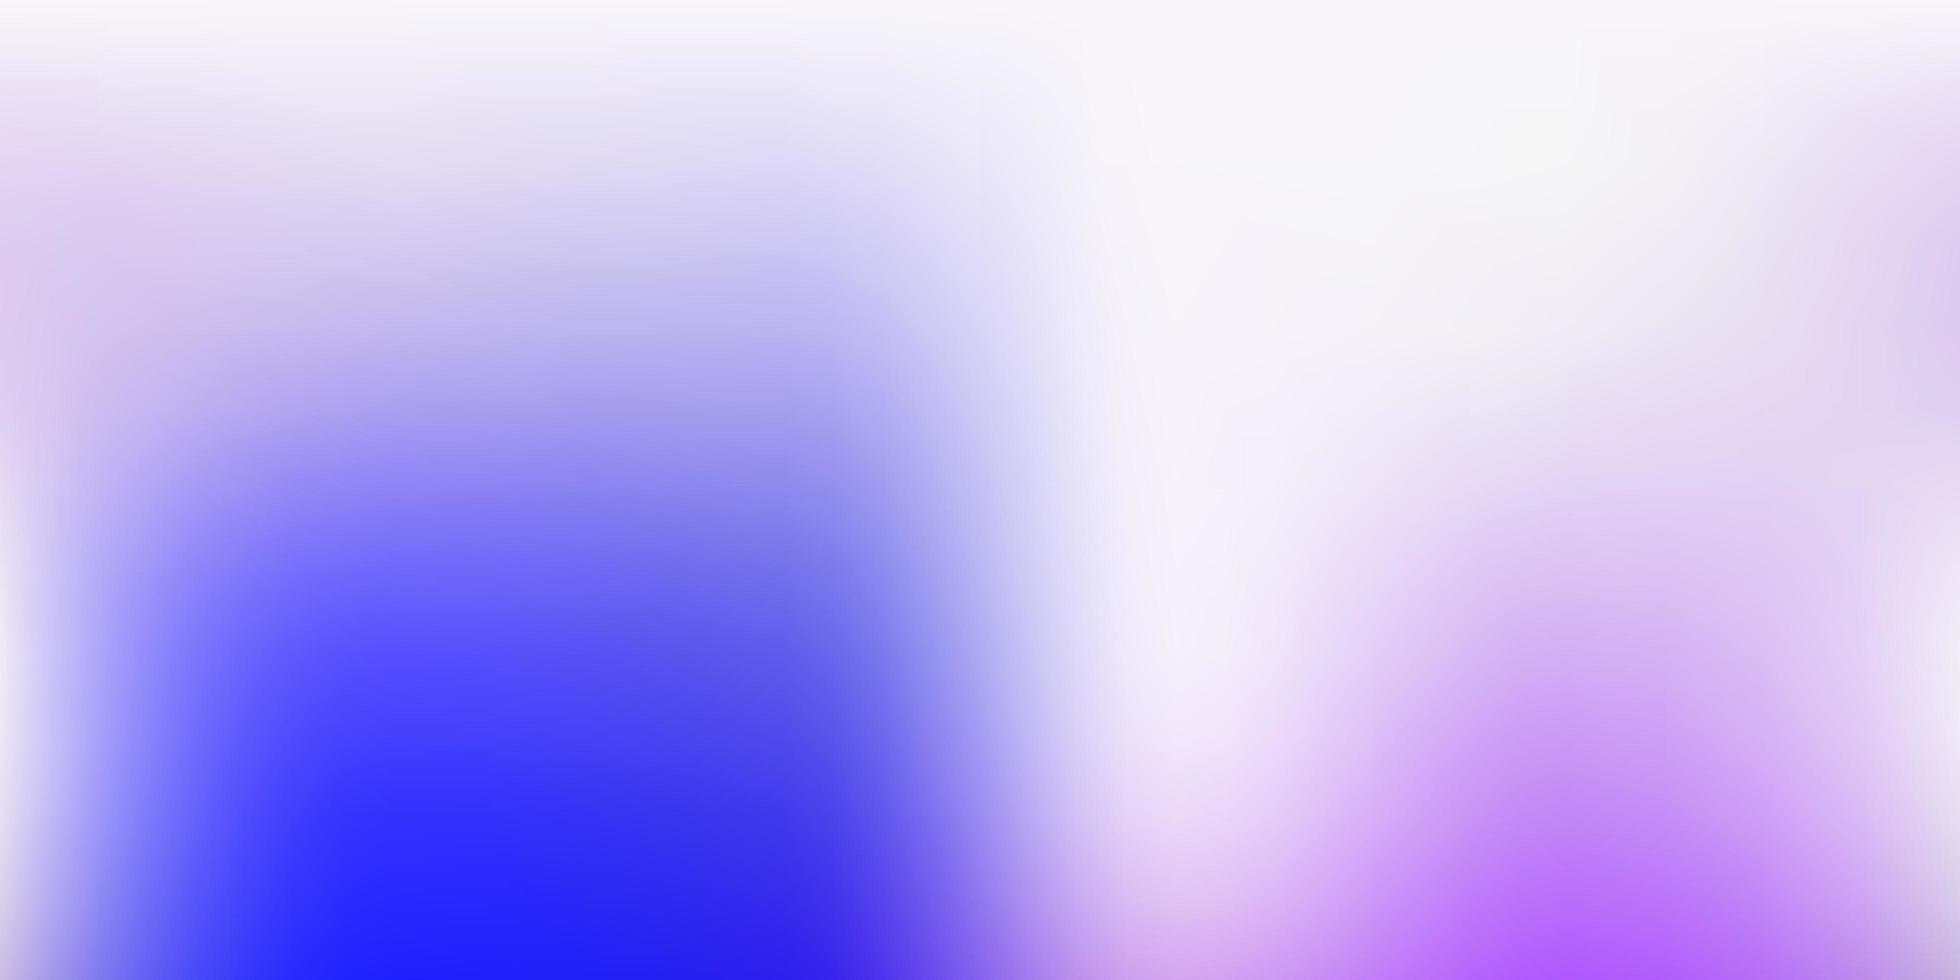 disegno di sfocatura vettoriale rosa chiaro, blu.